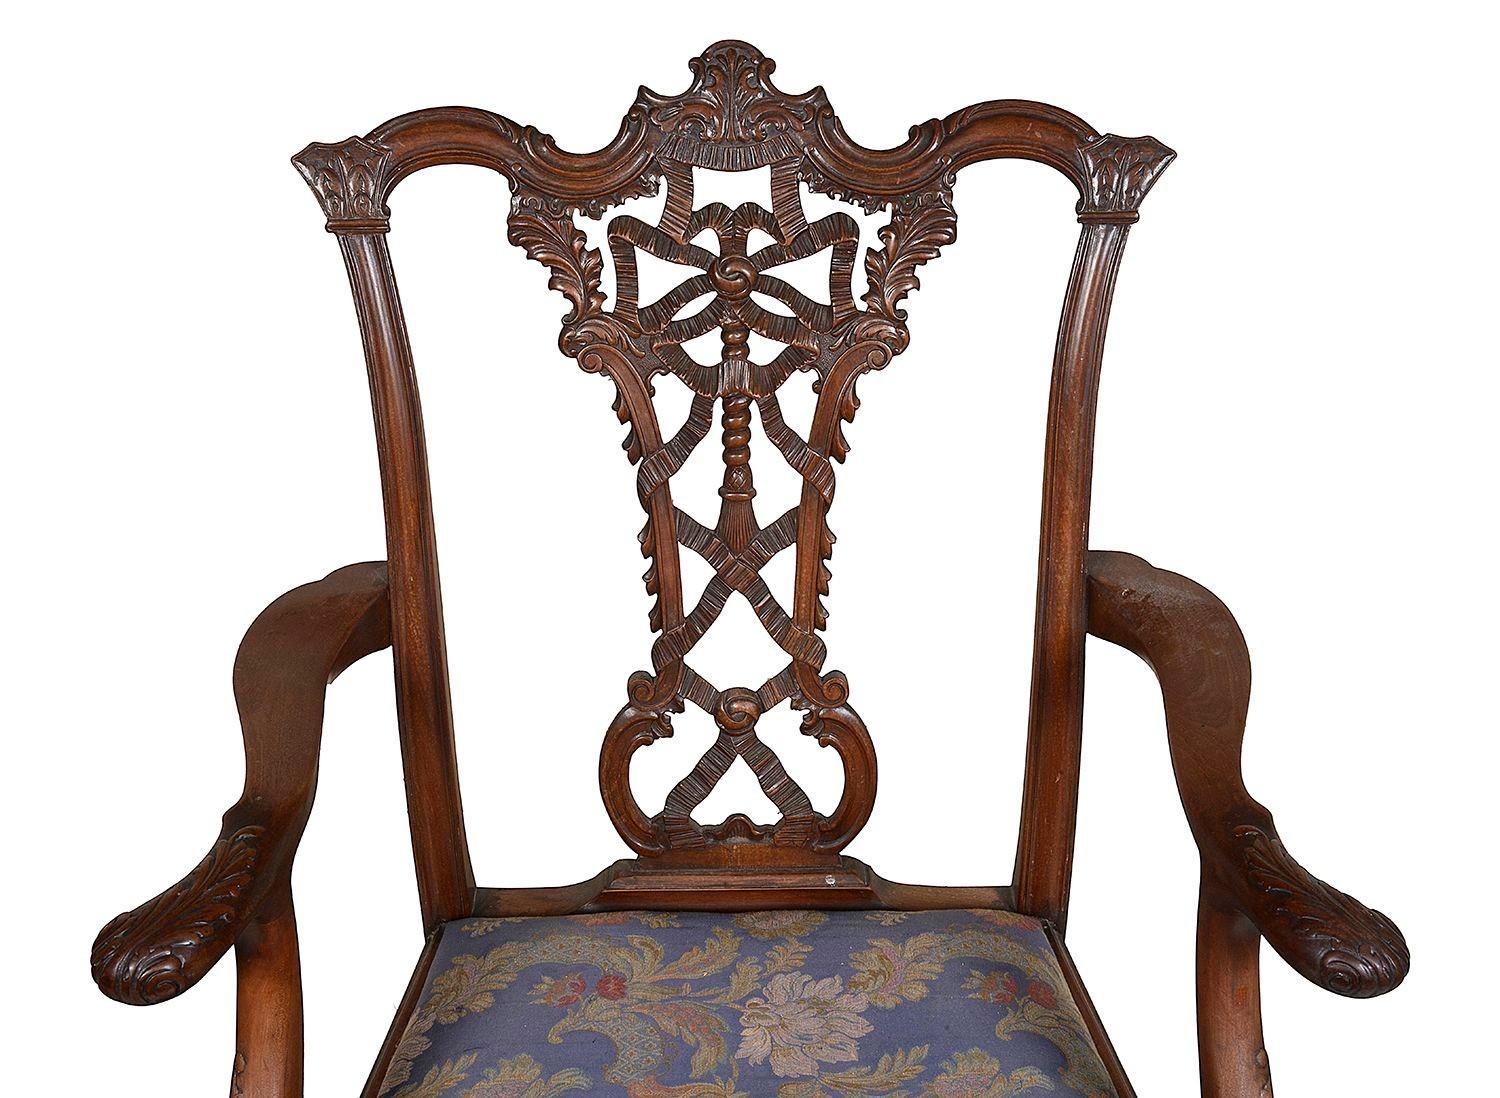 Une paire de fauteuils de style Chippendale en acajou anglais du 19ème siècle, chacun avec un magnifique dossier sculpté à la main, des sièges rembourrés et reposant sur des pieds cabriole, terminés par des pieds en forme de boule et de